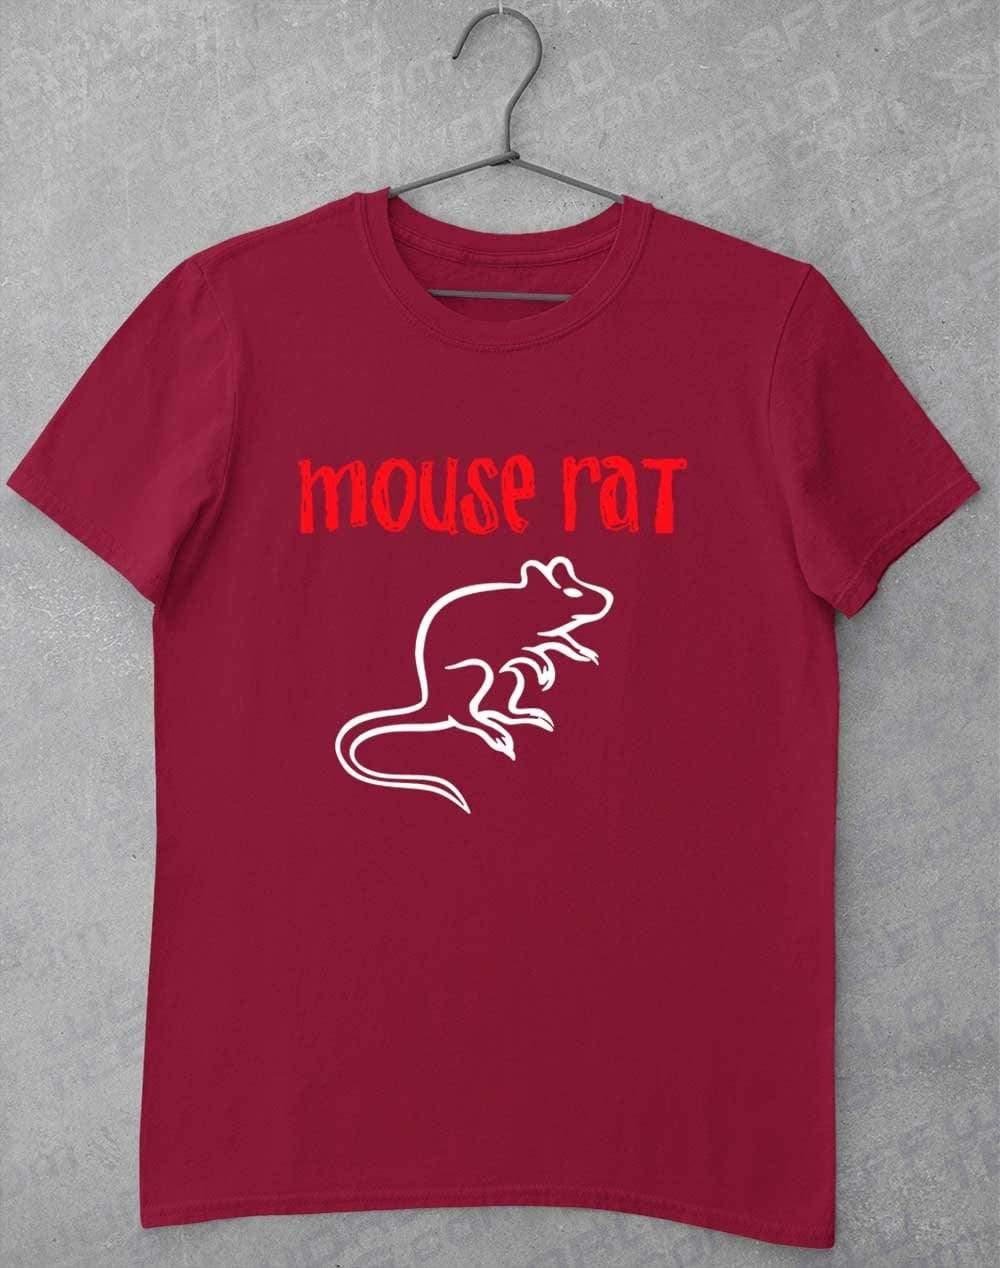 Mouse Rat Text Logo T-Shirt S / Cardinal Red  - Off World Tees